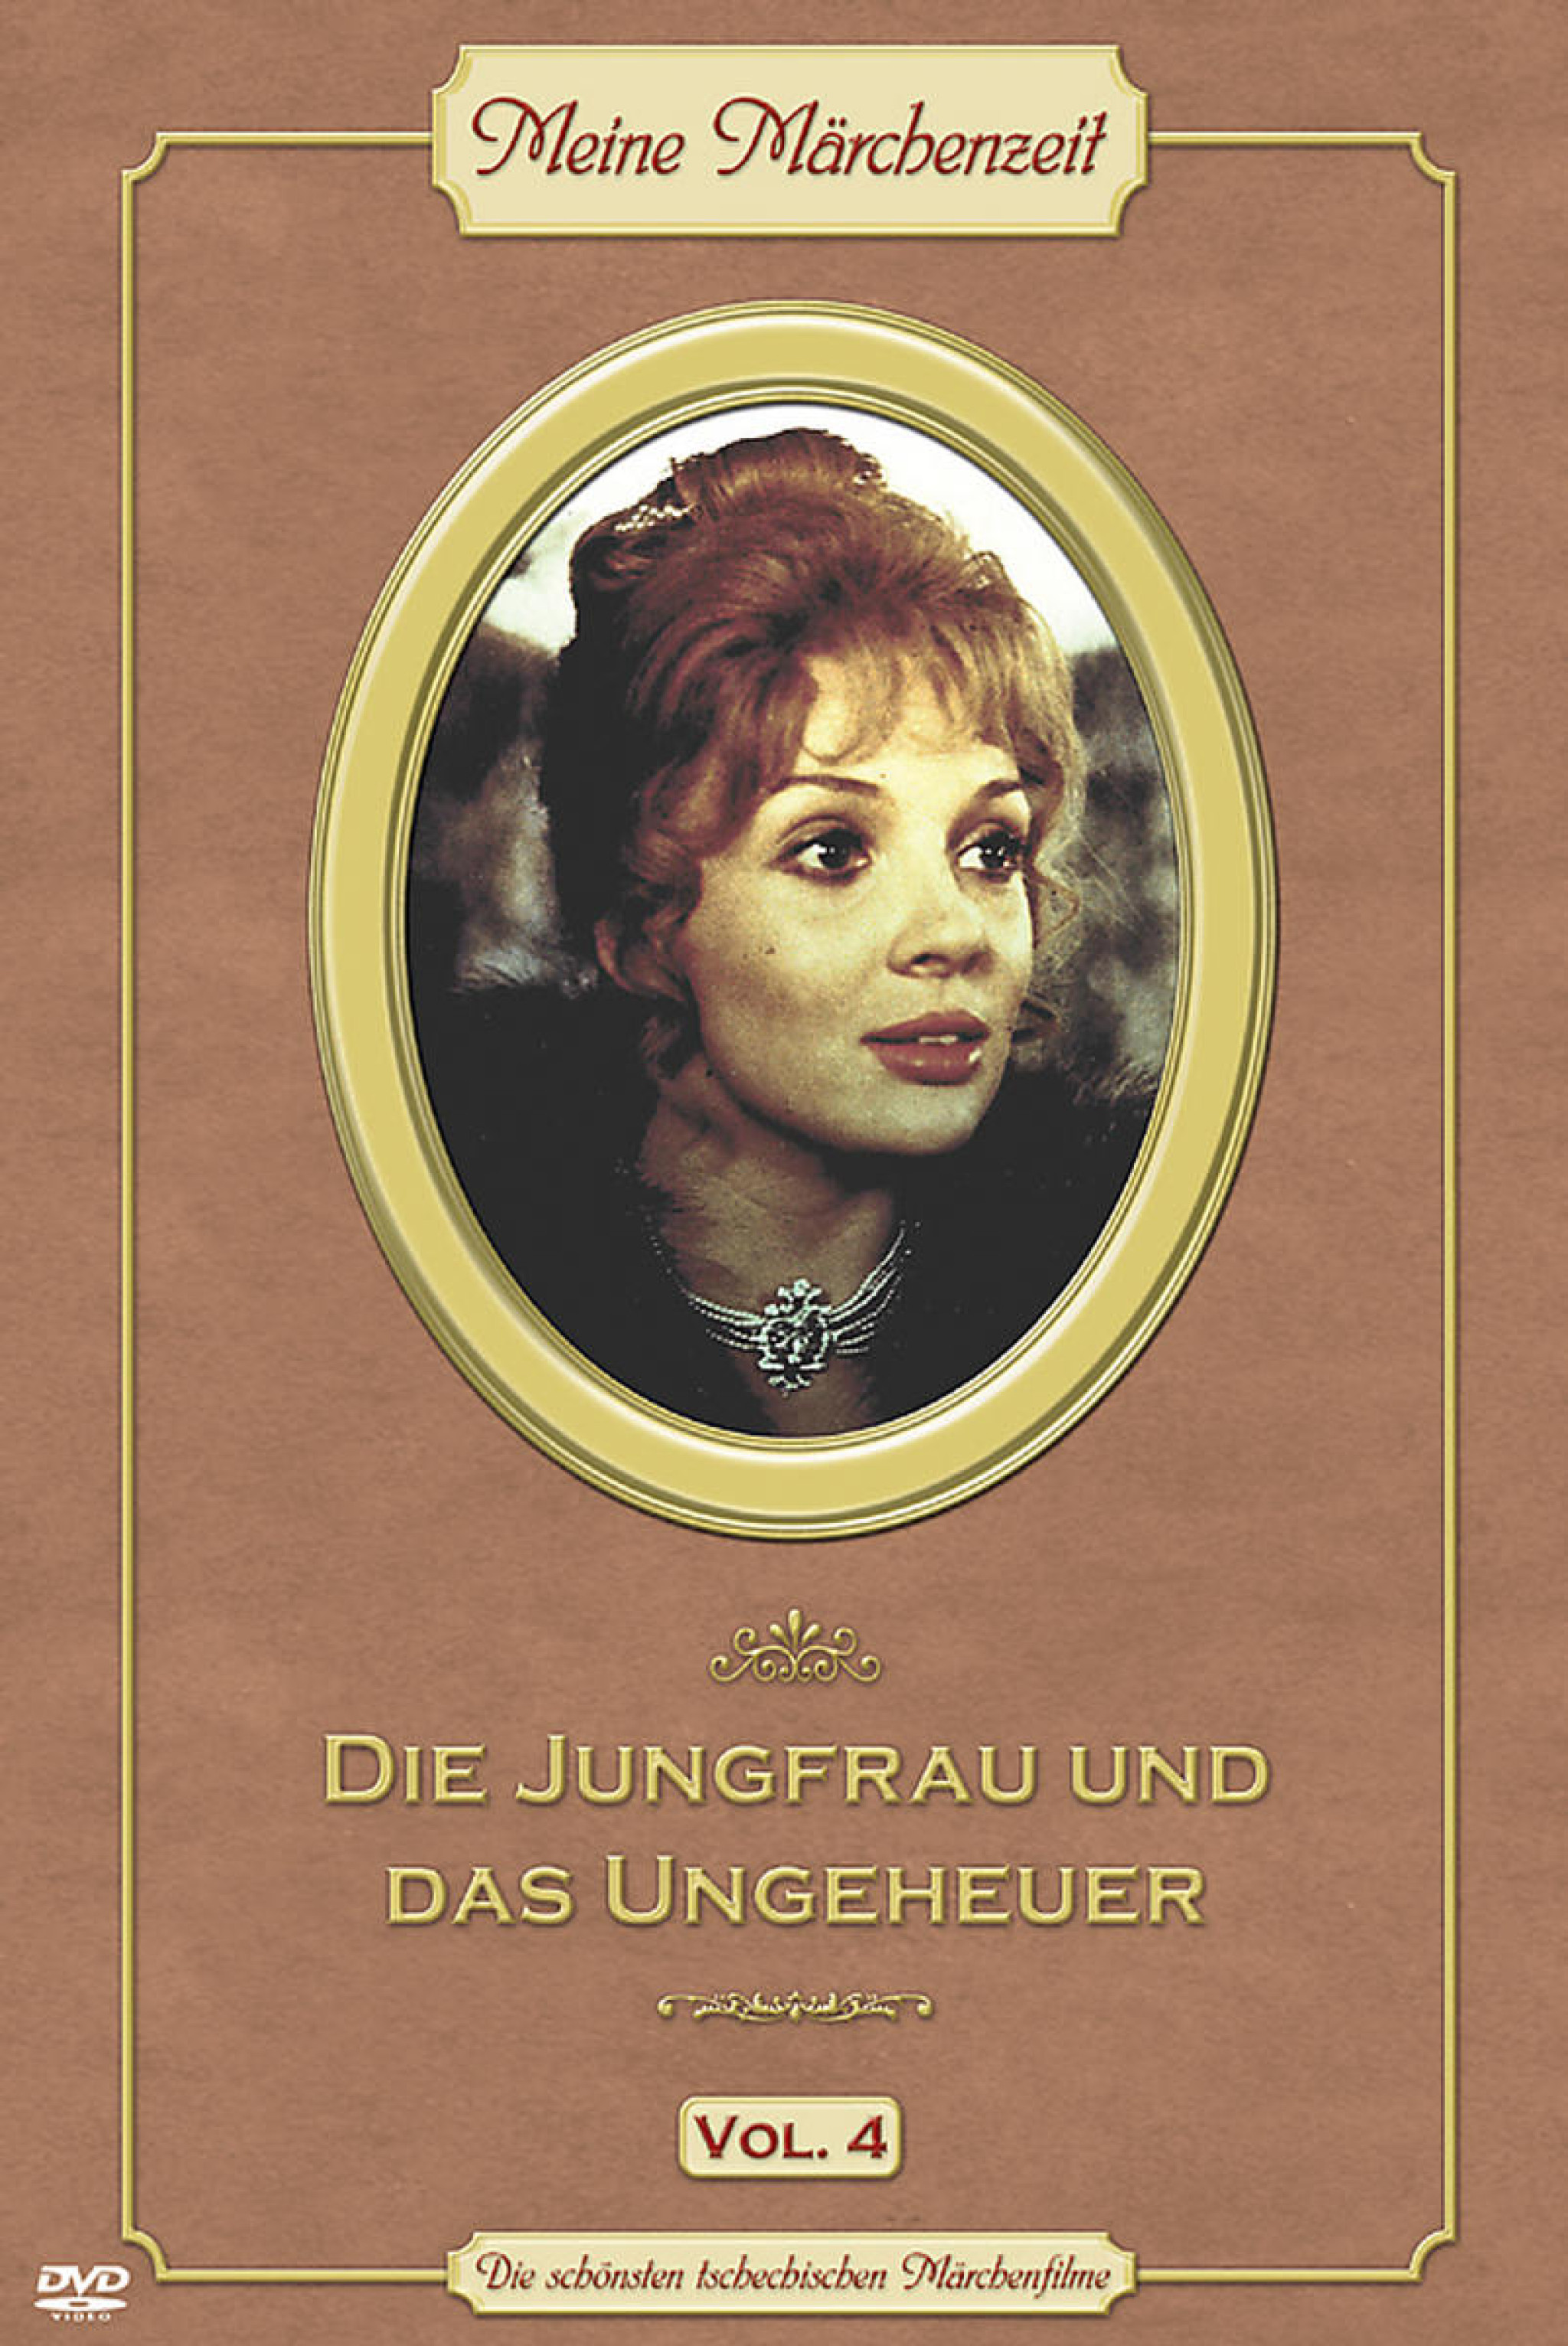 Die Jungfrau und das Ungeheuer - Meine Märchenwelt (Vol. 4) 0602498186934